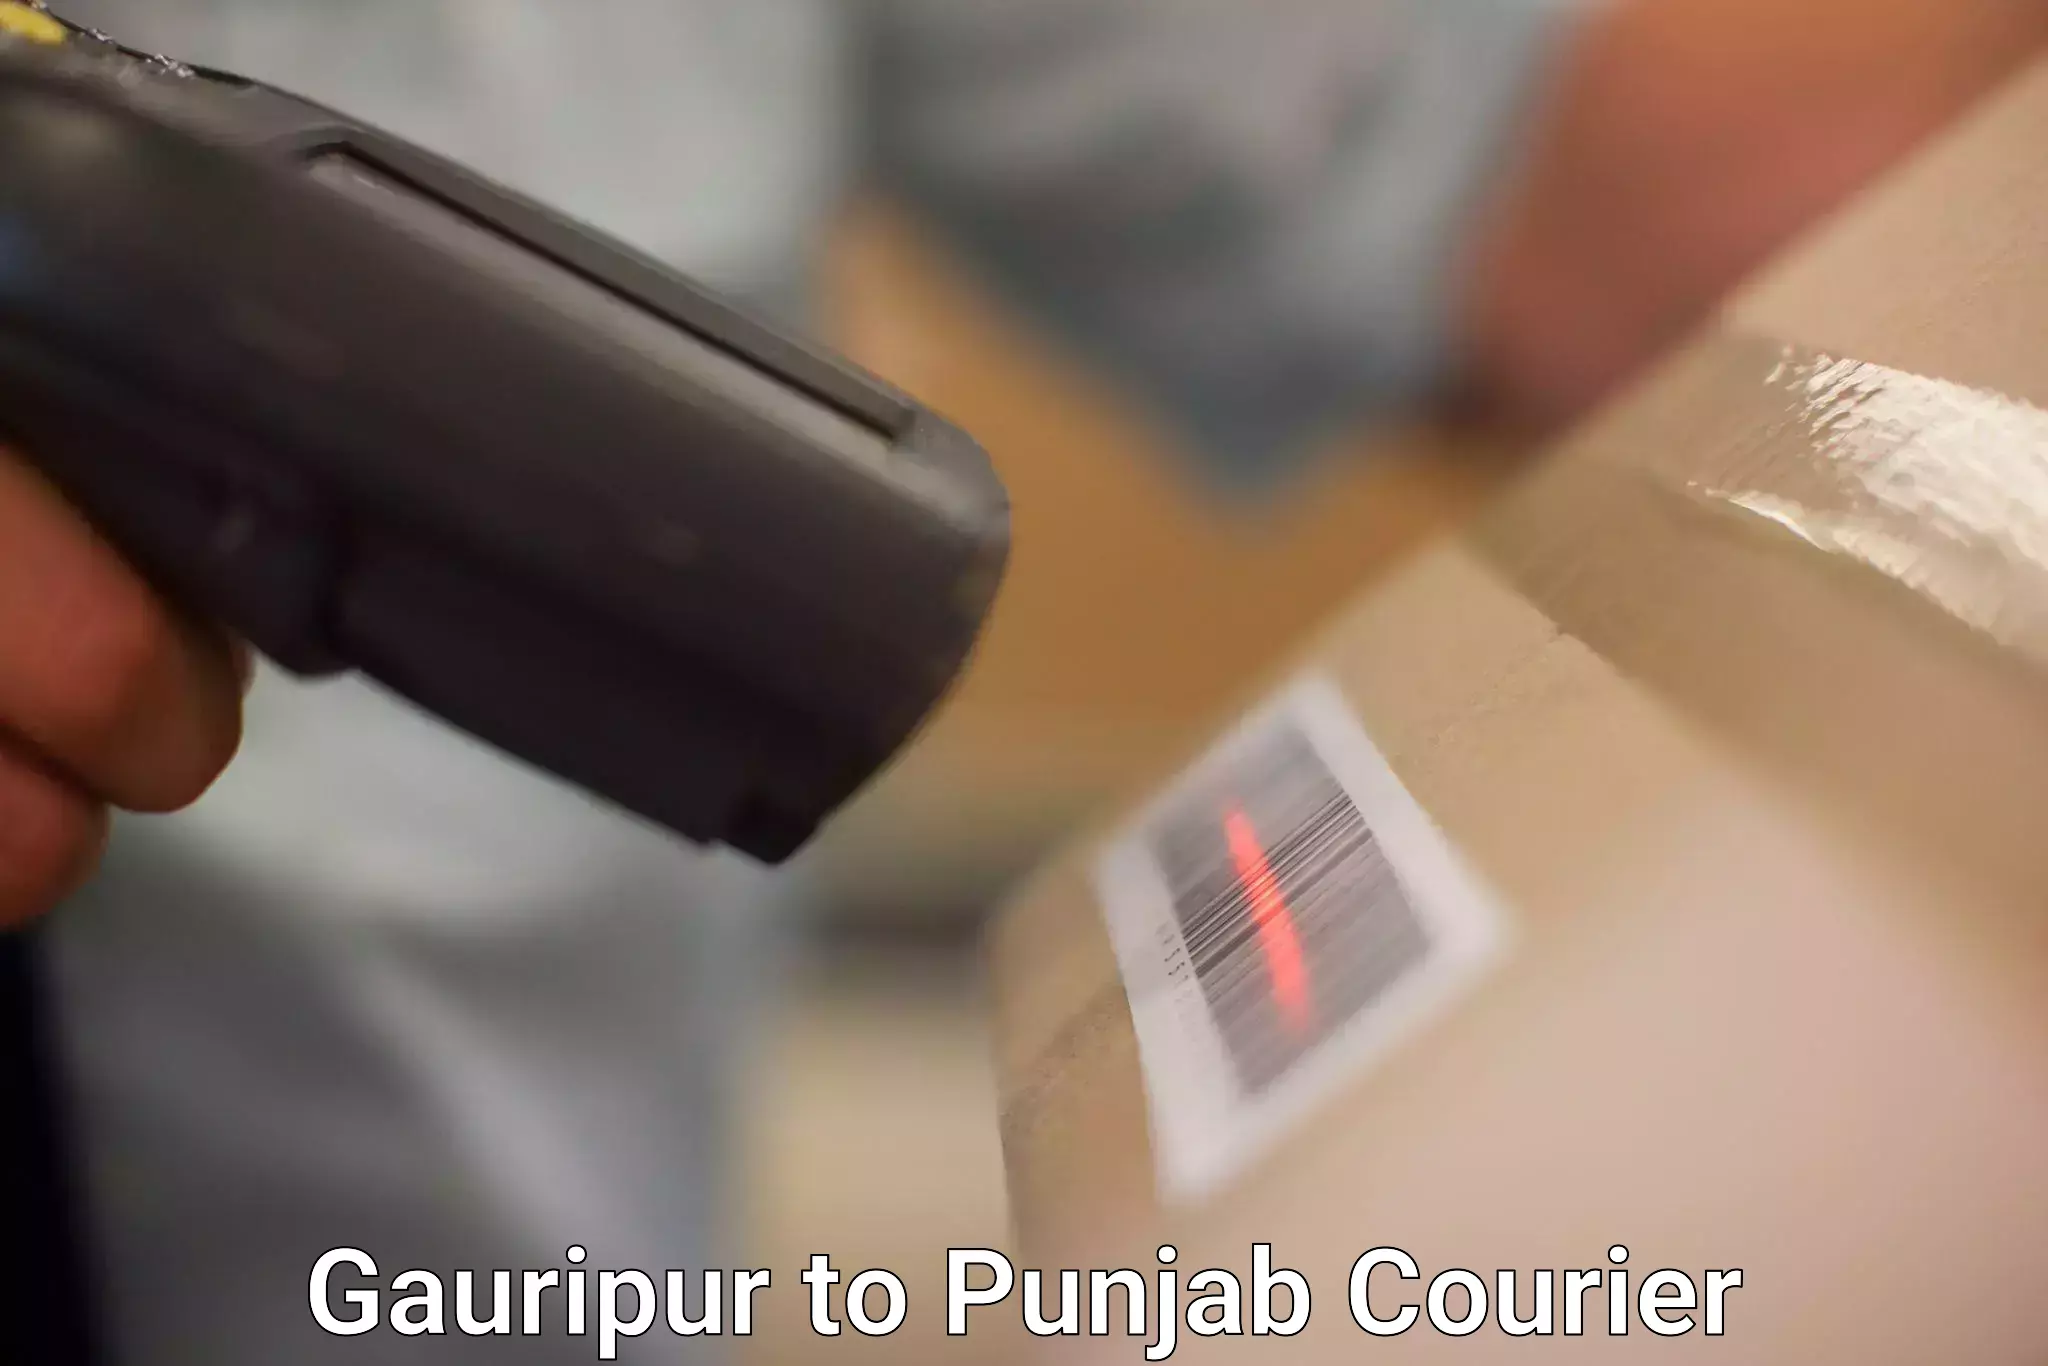 Digital shipping tools Gauripur to Pathankot